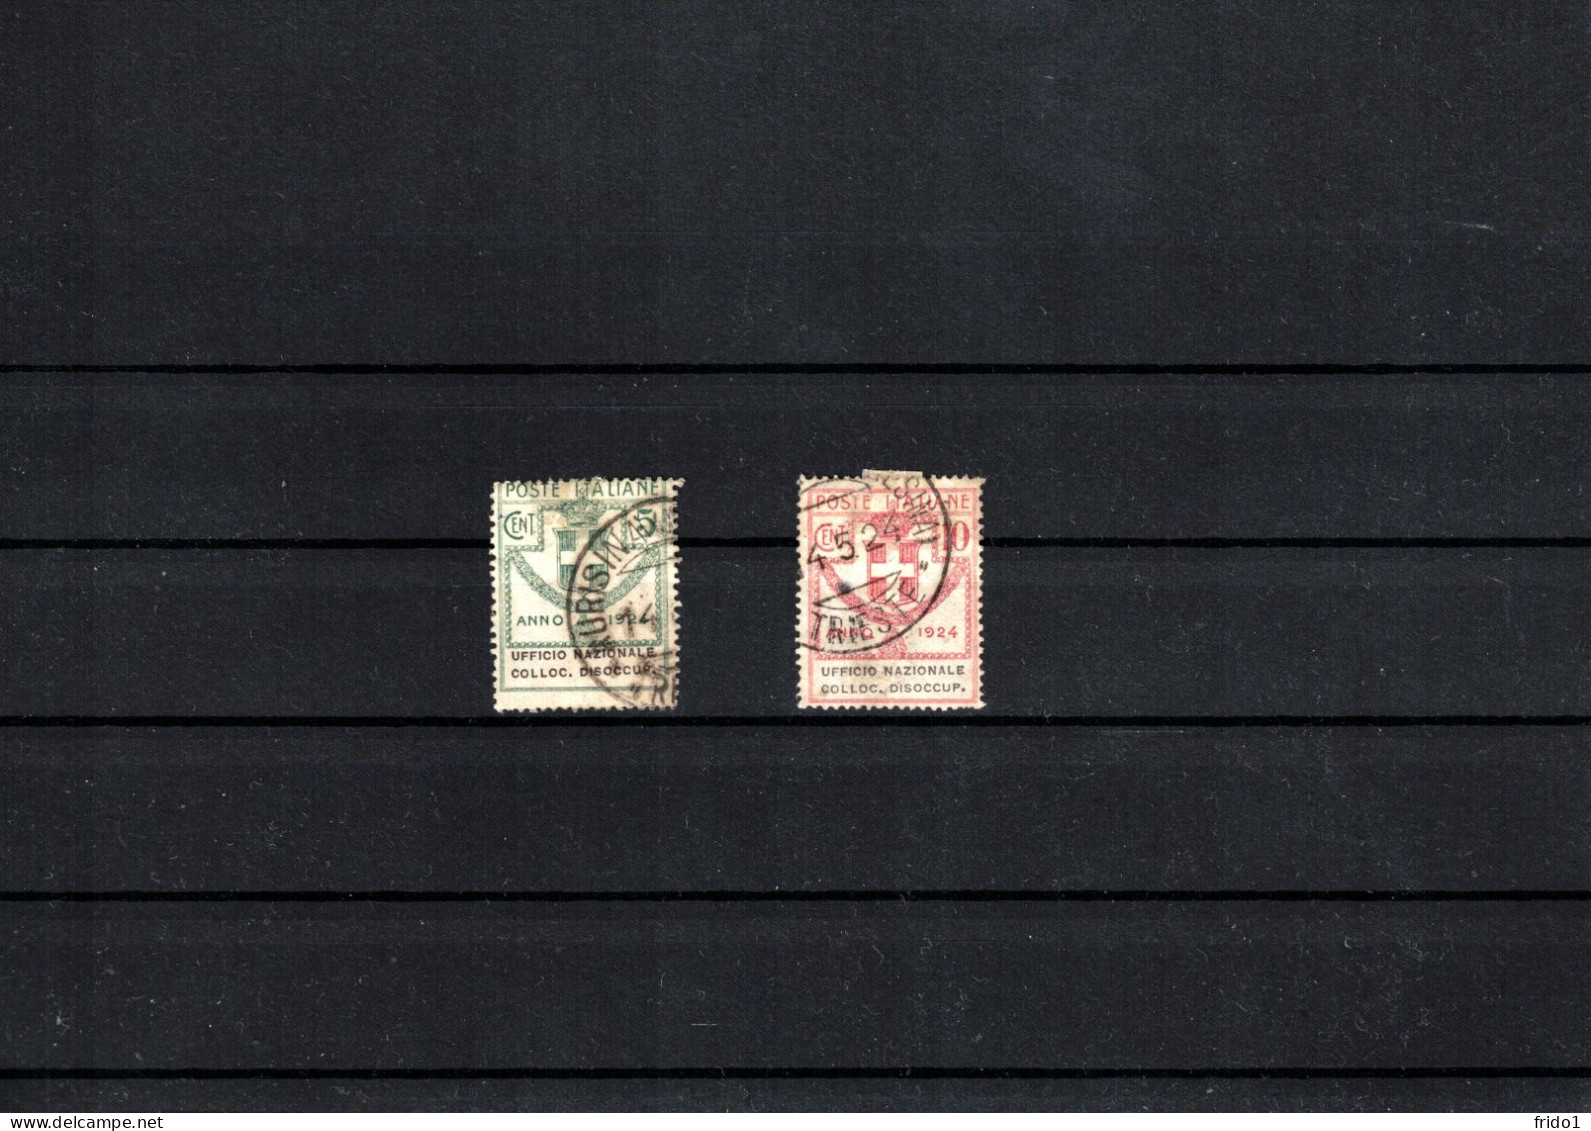 Italy / Italia 1924 Semi-State Stamps - Ufficio Nazionale Colloc. Dissocup. Fine Used - Oblitérés